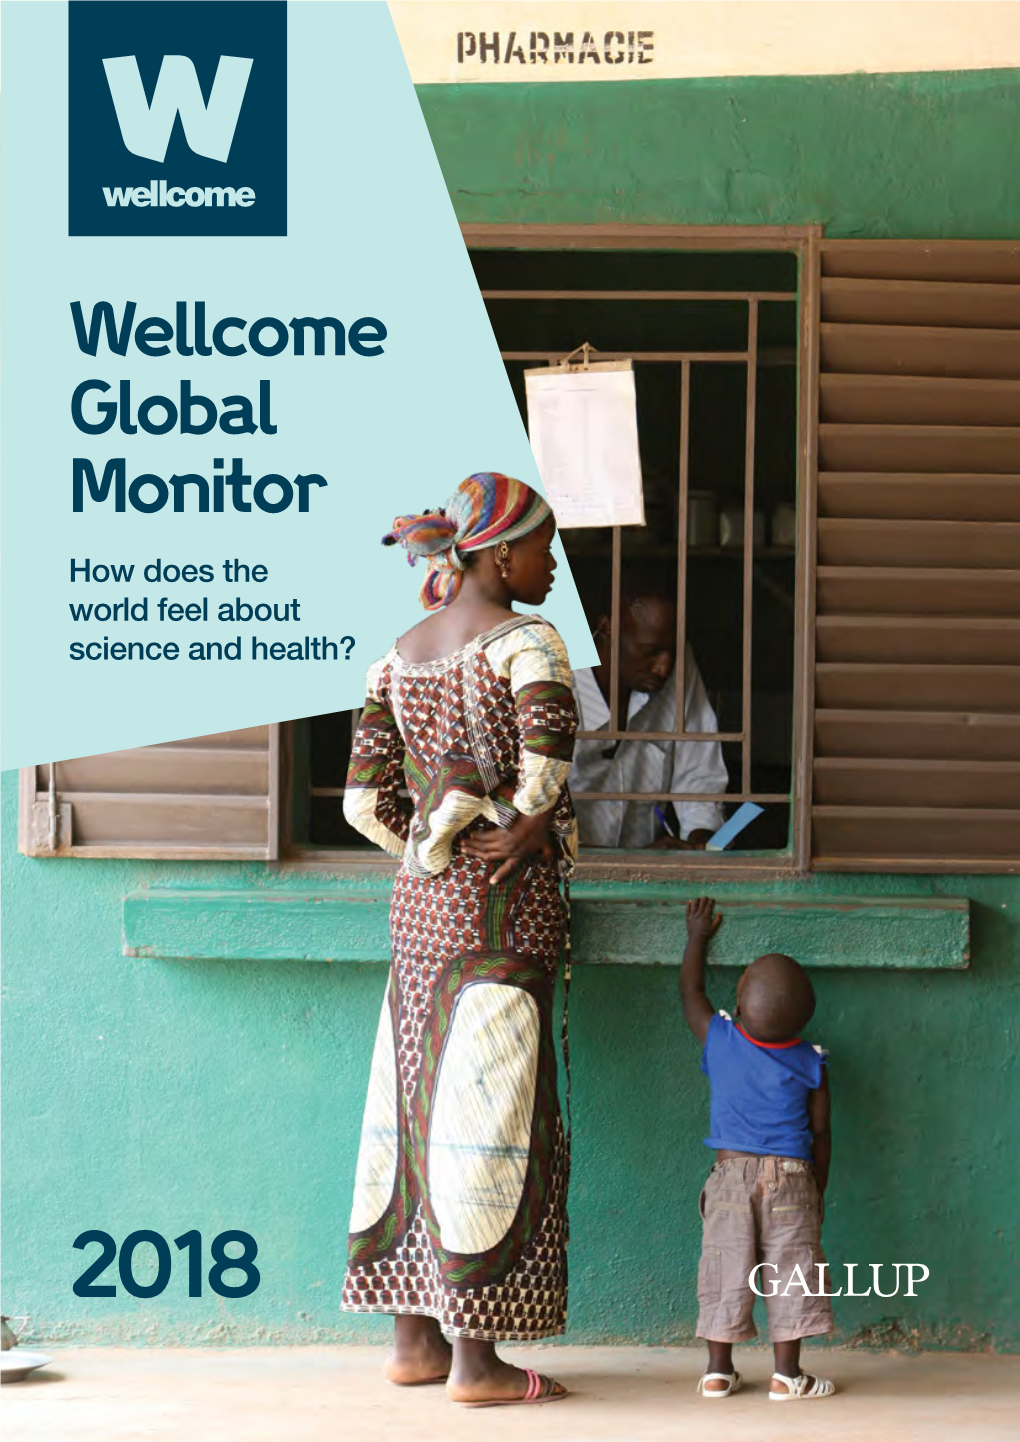 Wellcome Global Monitor 2018